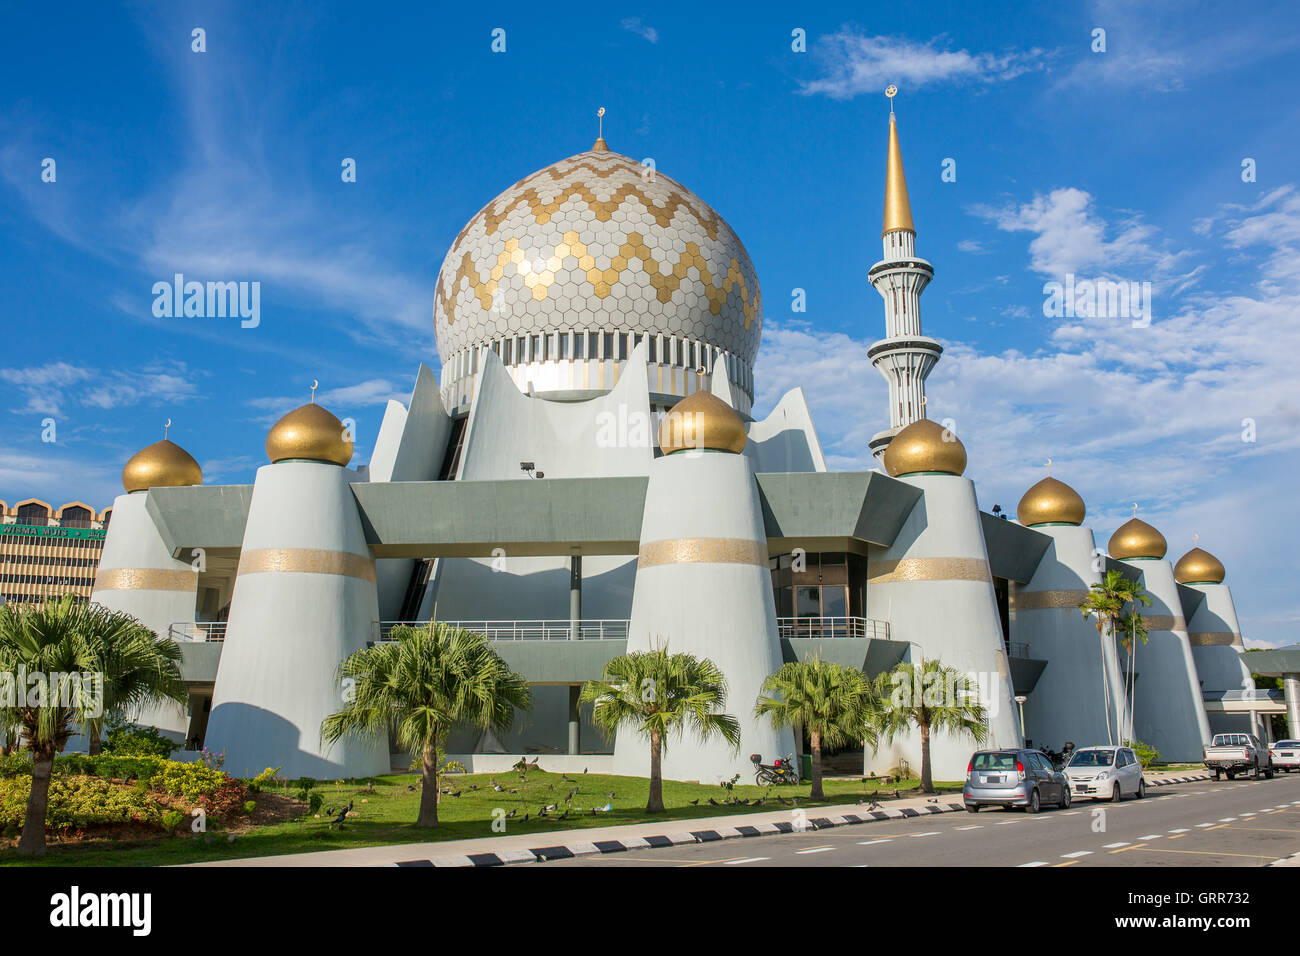 Kota Kinabalu, Malaysia - June 7, 2016: Masjid Negeri Sabah is the state mosque of Sabah in Kota Kinabalu, Malaysia Stock Photo